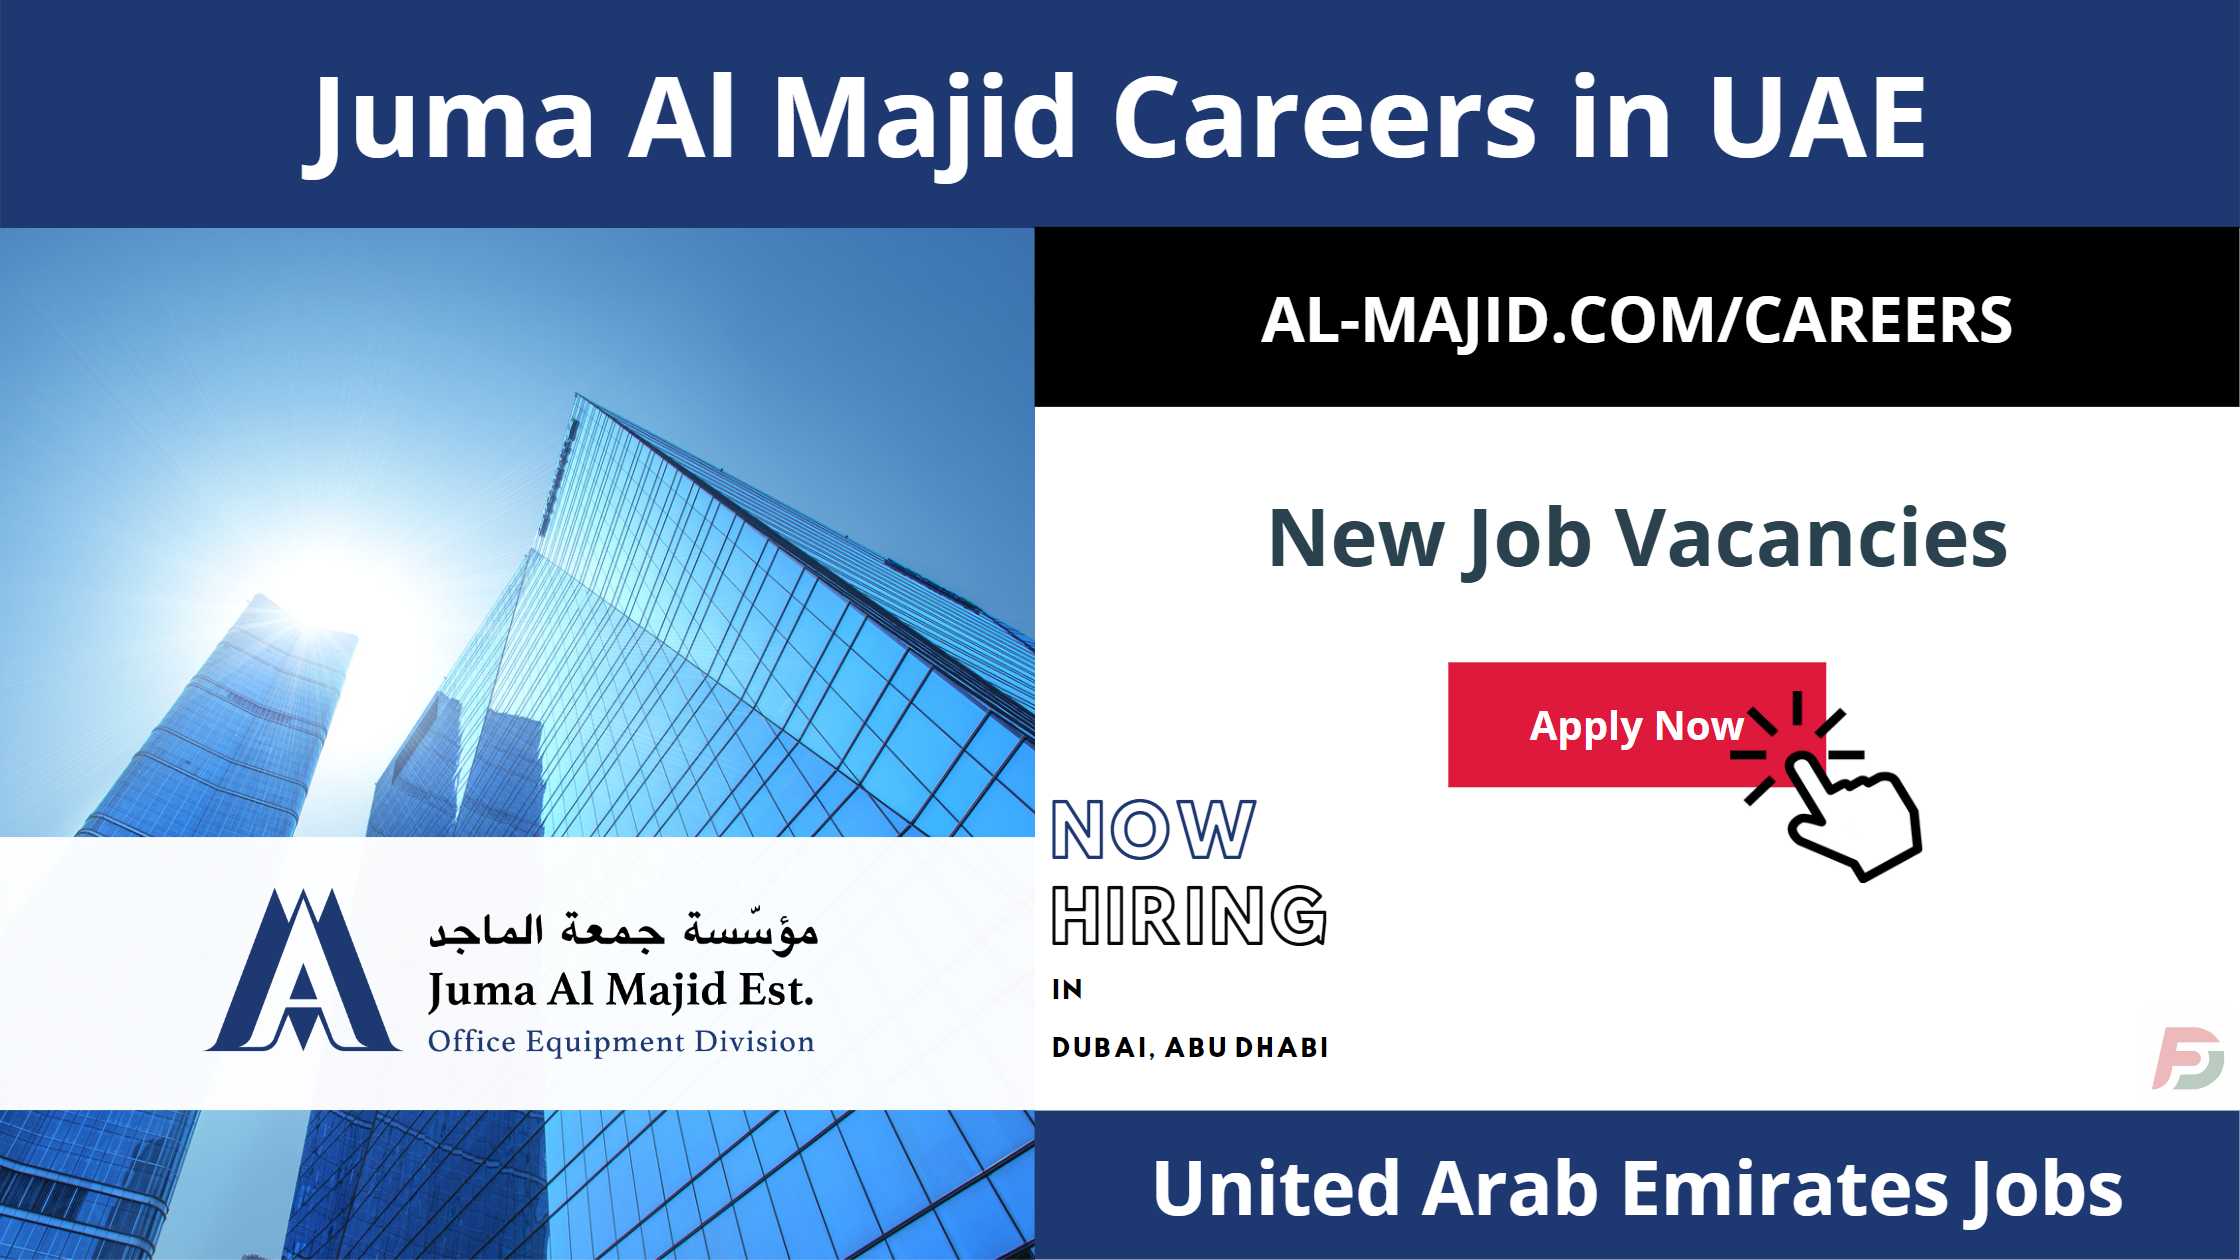 Juma Al Majid Careers in UAE